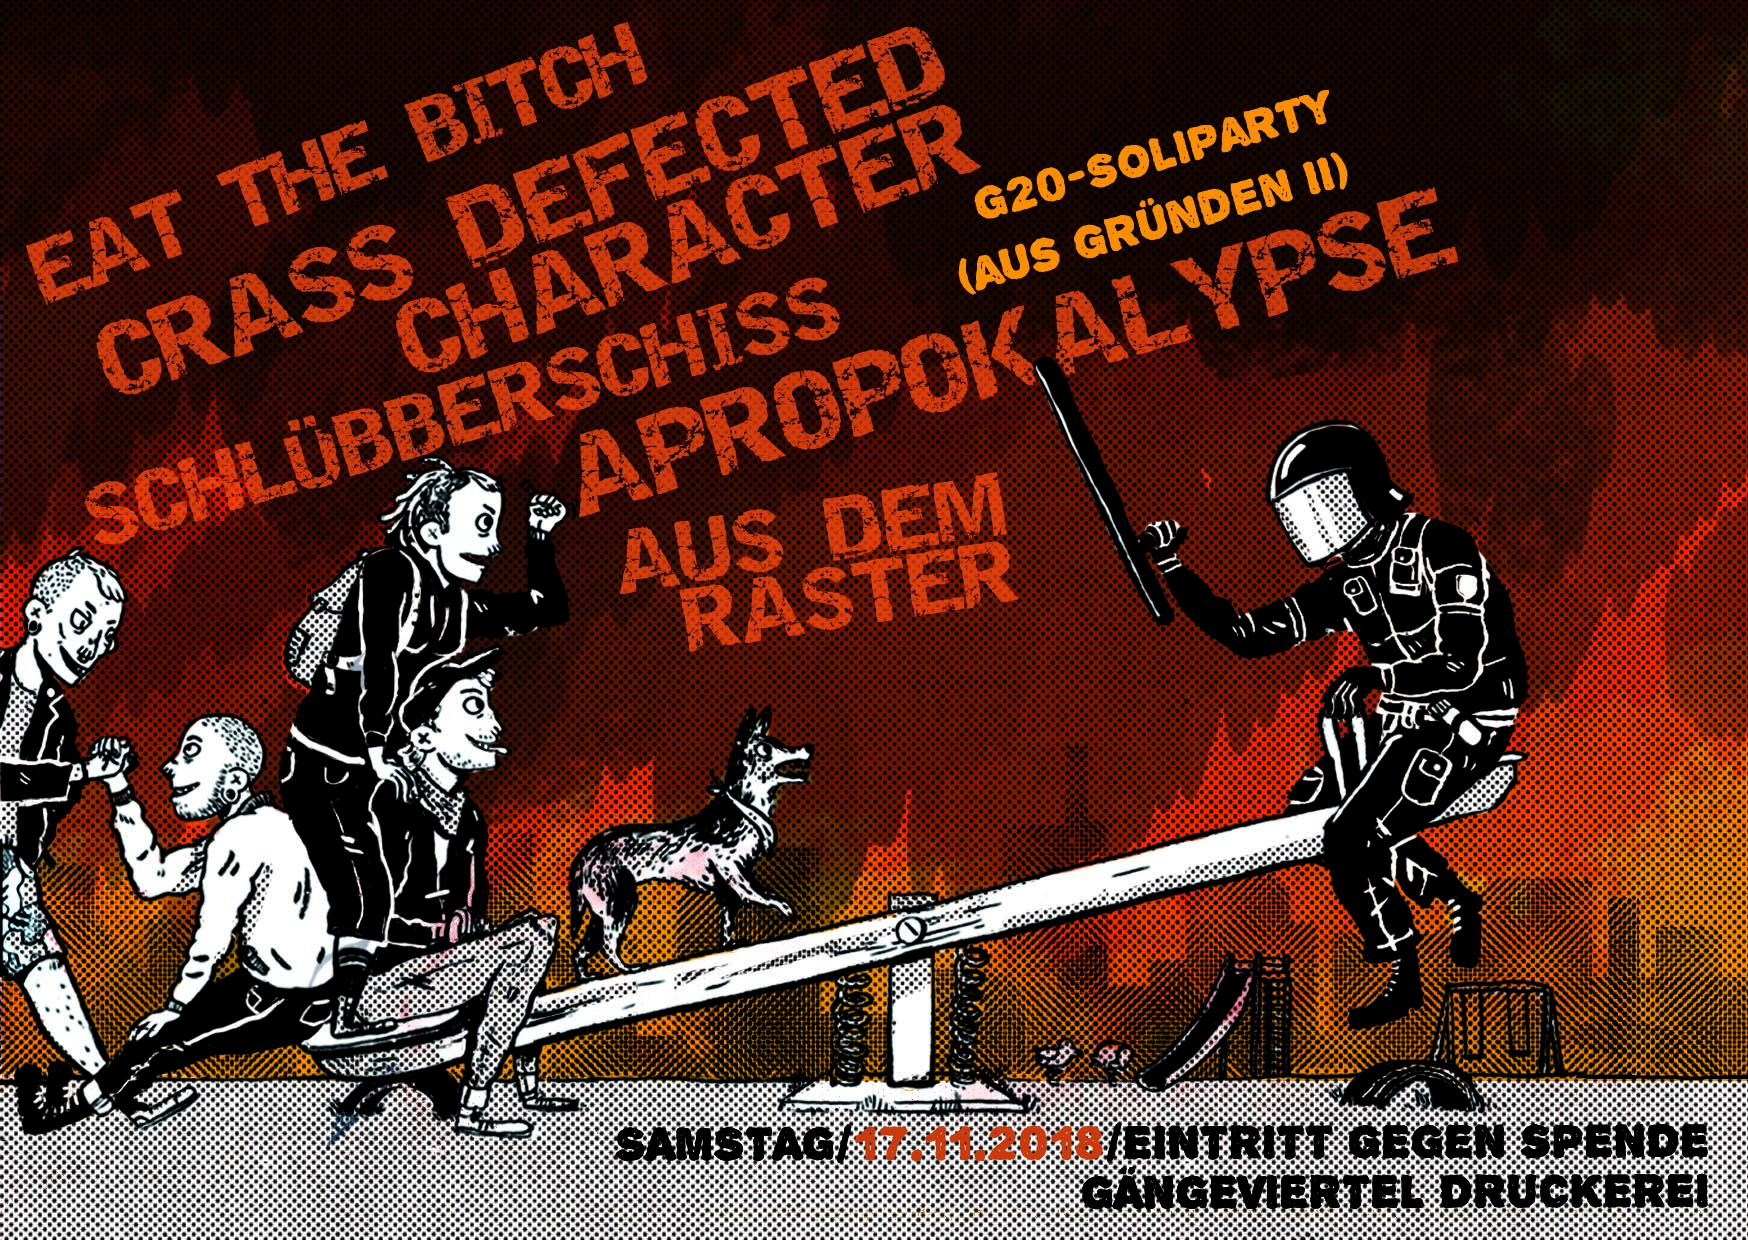 Eat The Bitch / Crass Defected Character / Schlübberschiss / Apropokalypse / Aus Dem Raster Bild 1